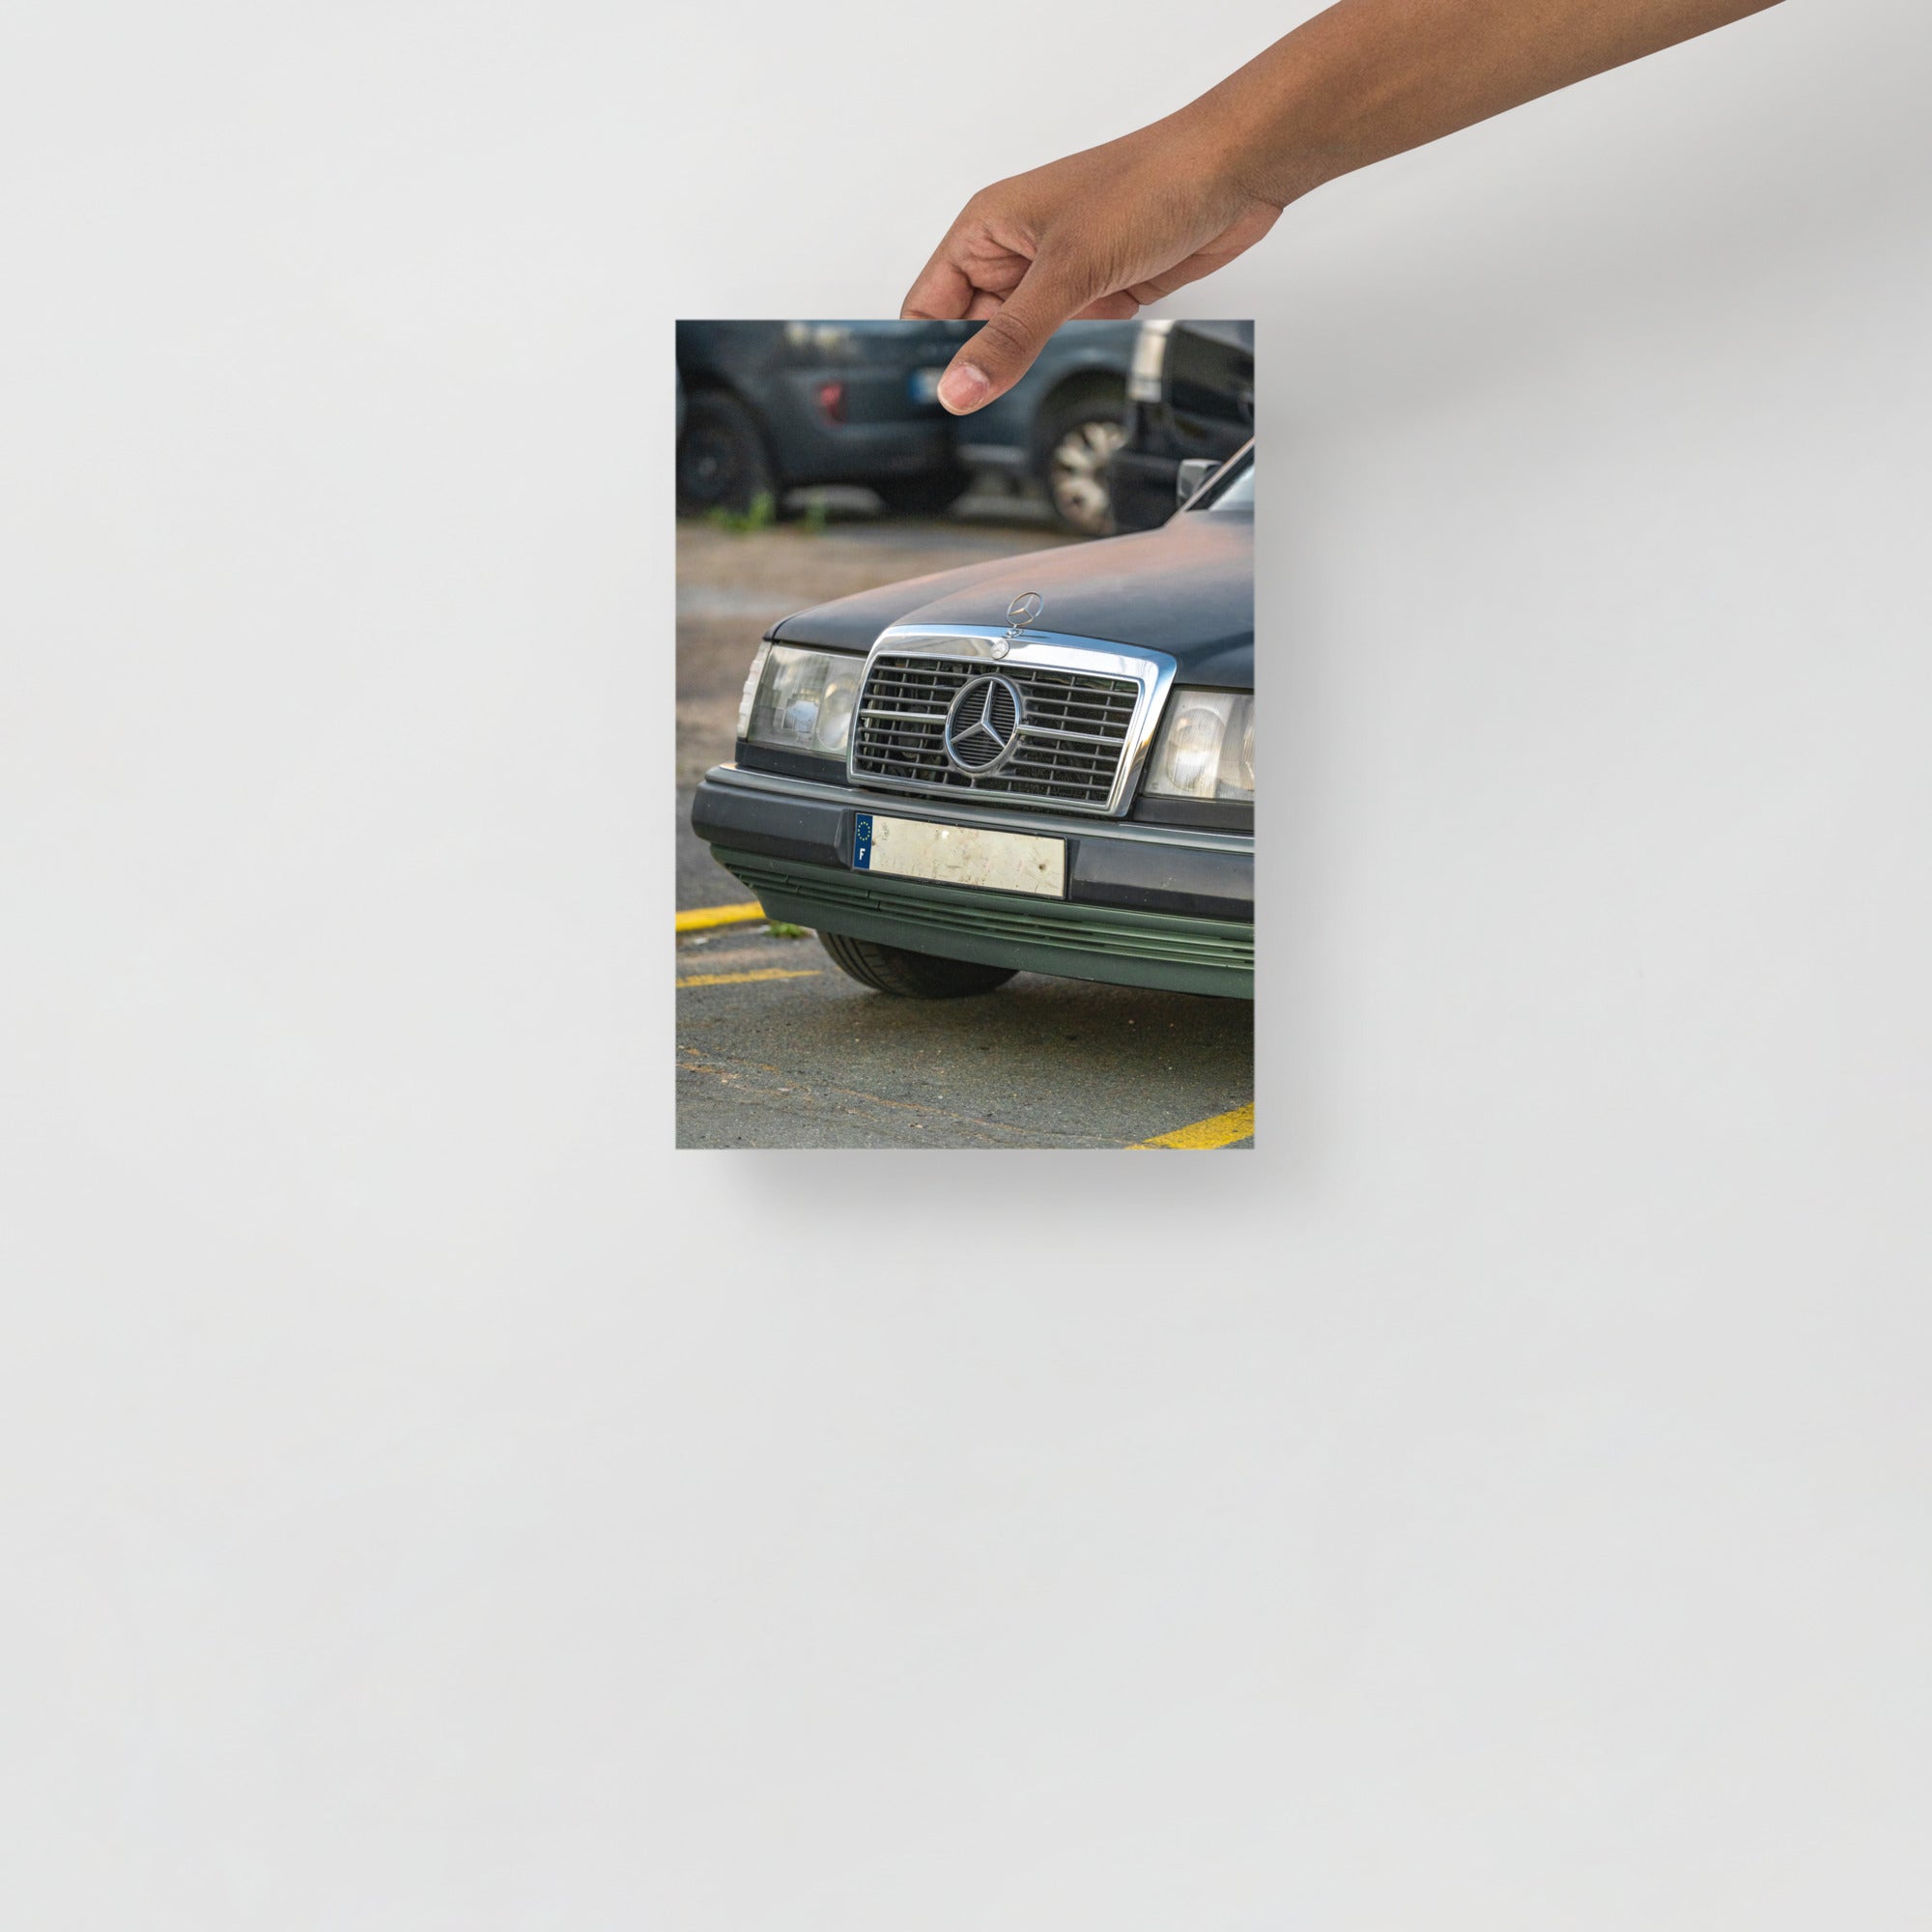 Poster mural - Mercedes Benz vintage – Photographie de vielle voiture – Poster photo, poster XXL, photographie murale et des posters muraux unique au monde. La boutique de posters créée par Yann Peccard un Photographe français.